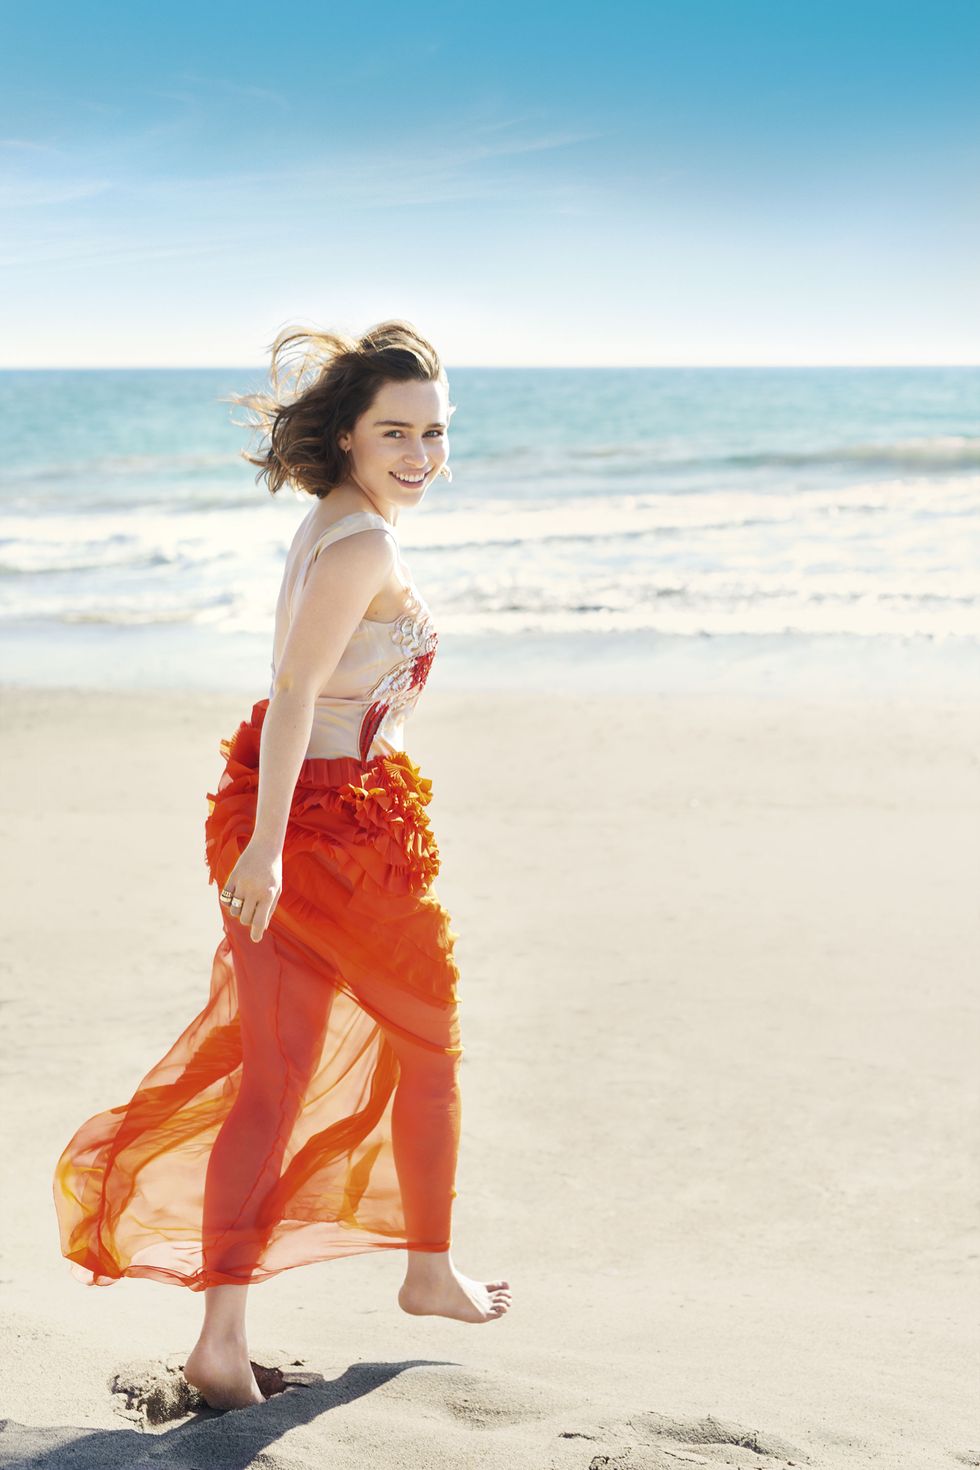 Video: Go behind the scenes with Emilia Clarke for Harper's Bazaar